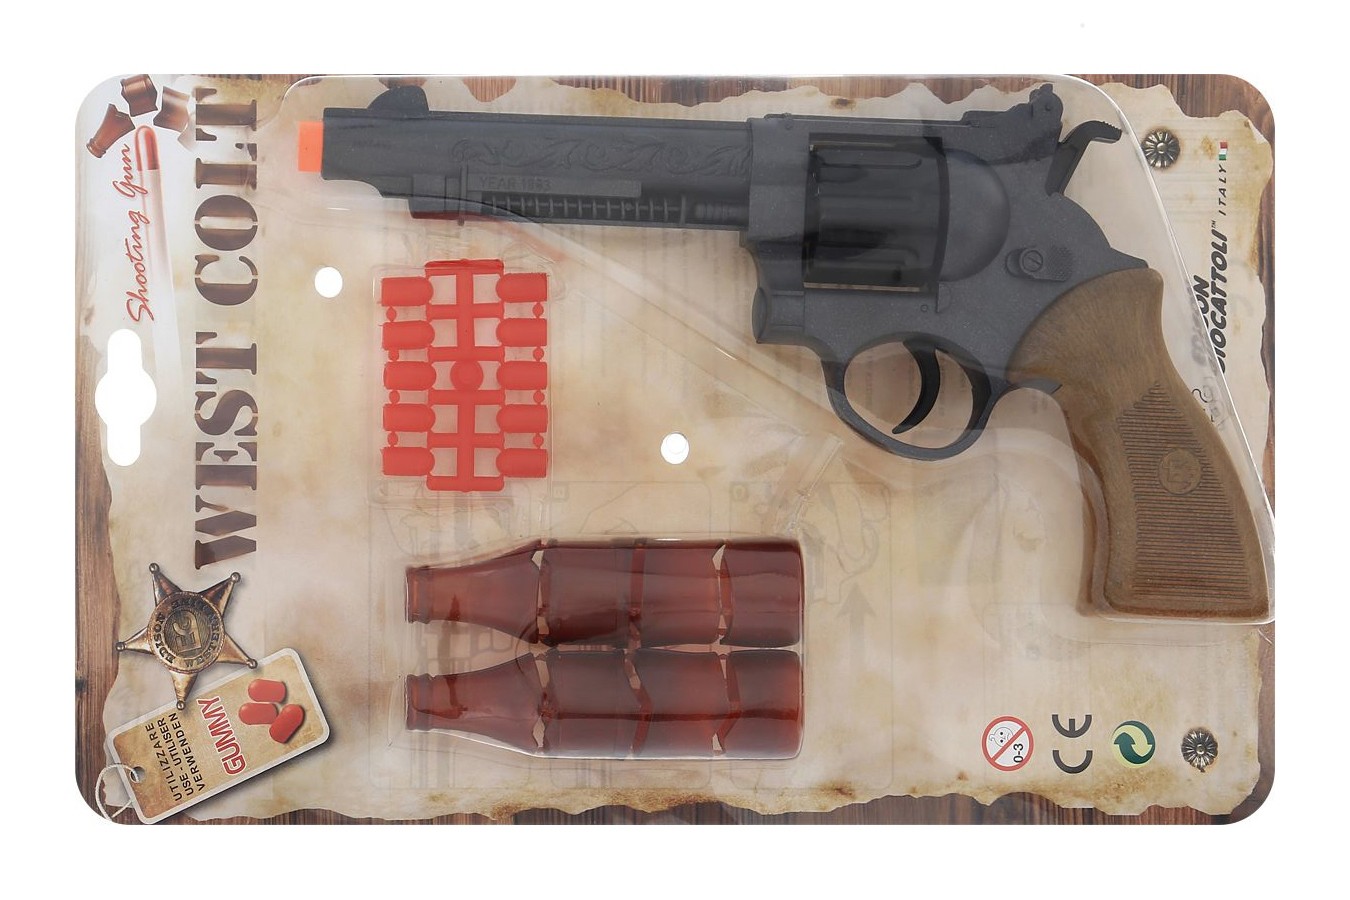 Іграшковий пістолет Edison Giocattoli West Colt 28см 8-зарядний з мішенню і кульками (465/32) ED-0465320